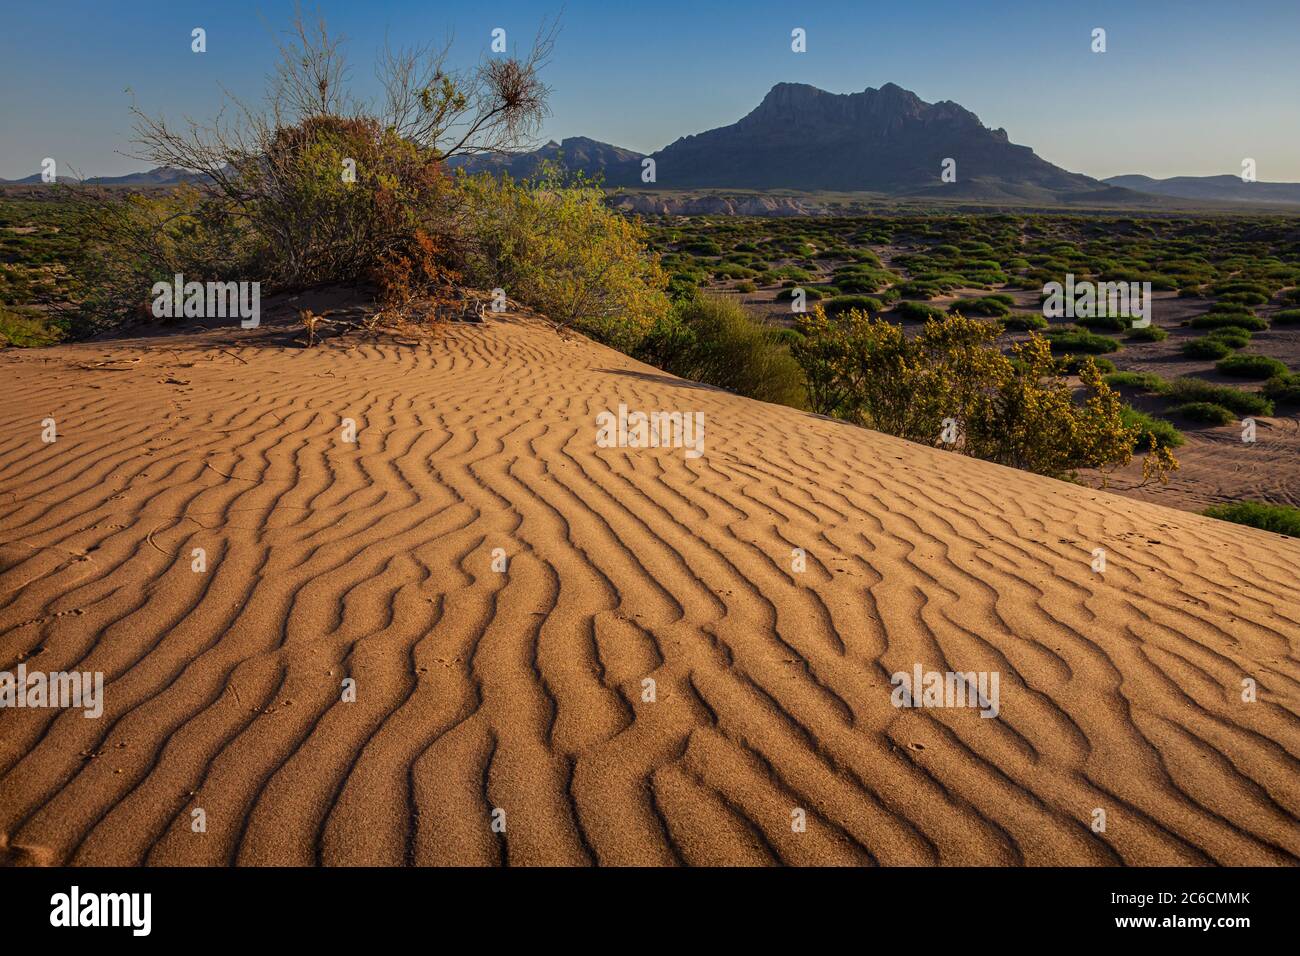 Hot Well Dunes ofrece un hábitat desértico único y oportunidades recreativas. Sur de Arizona. Foto de stock